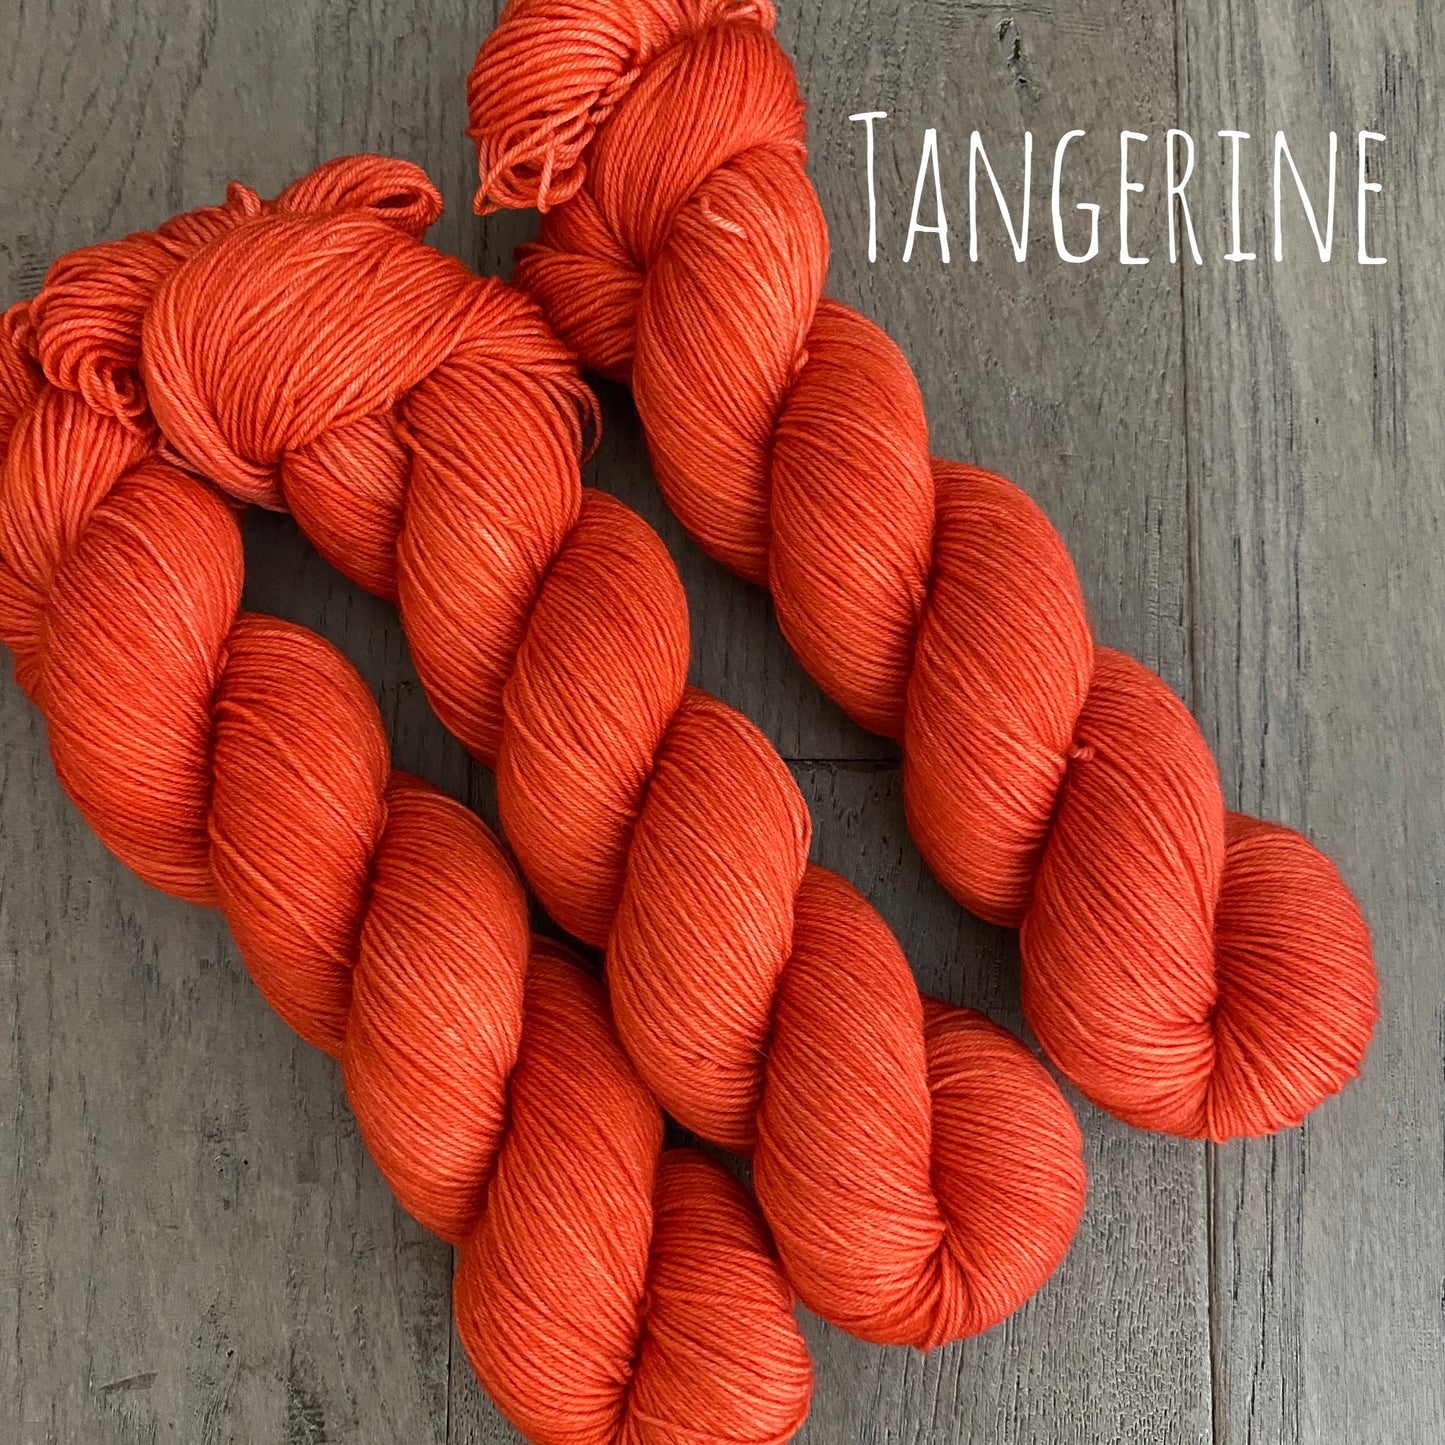 Tangerine Fingering Yarn